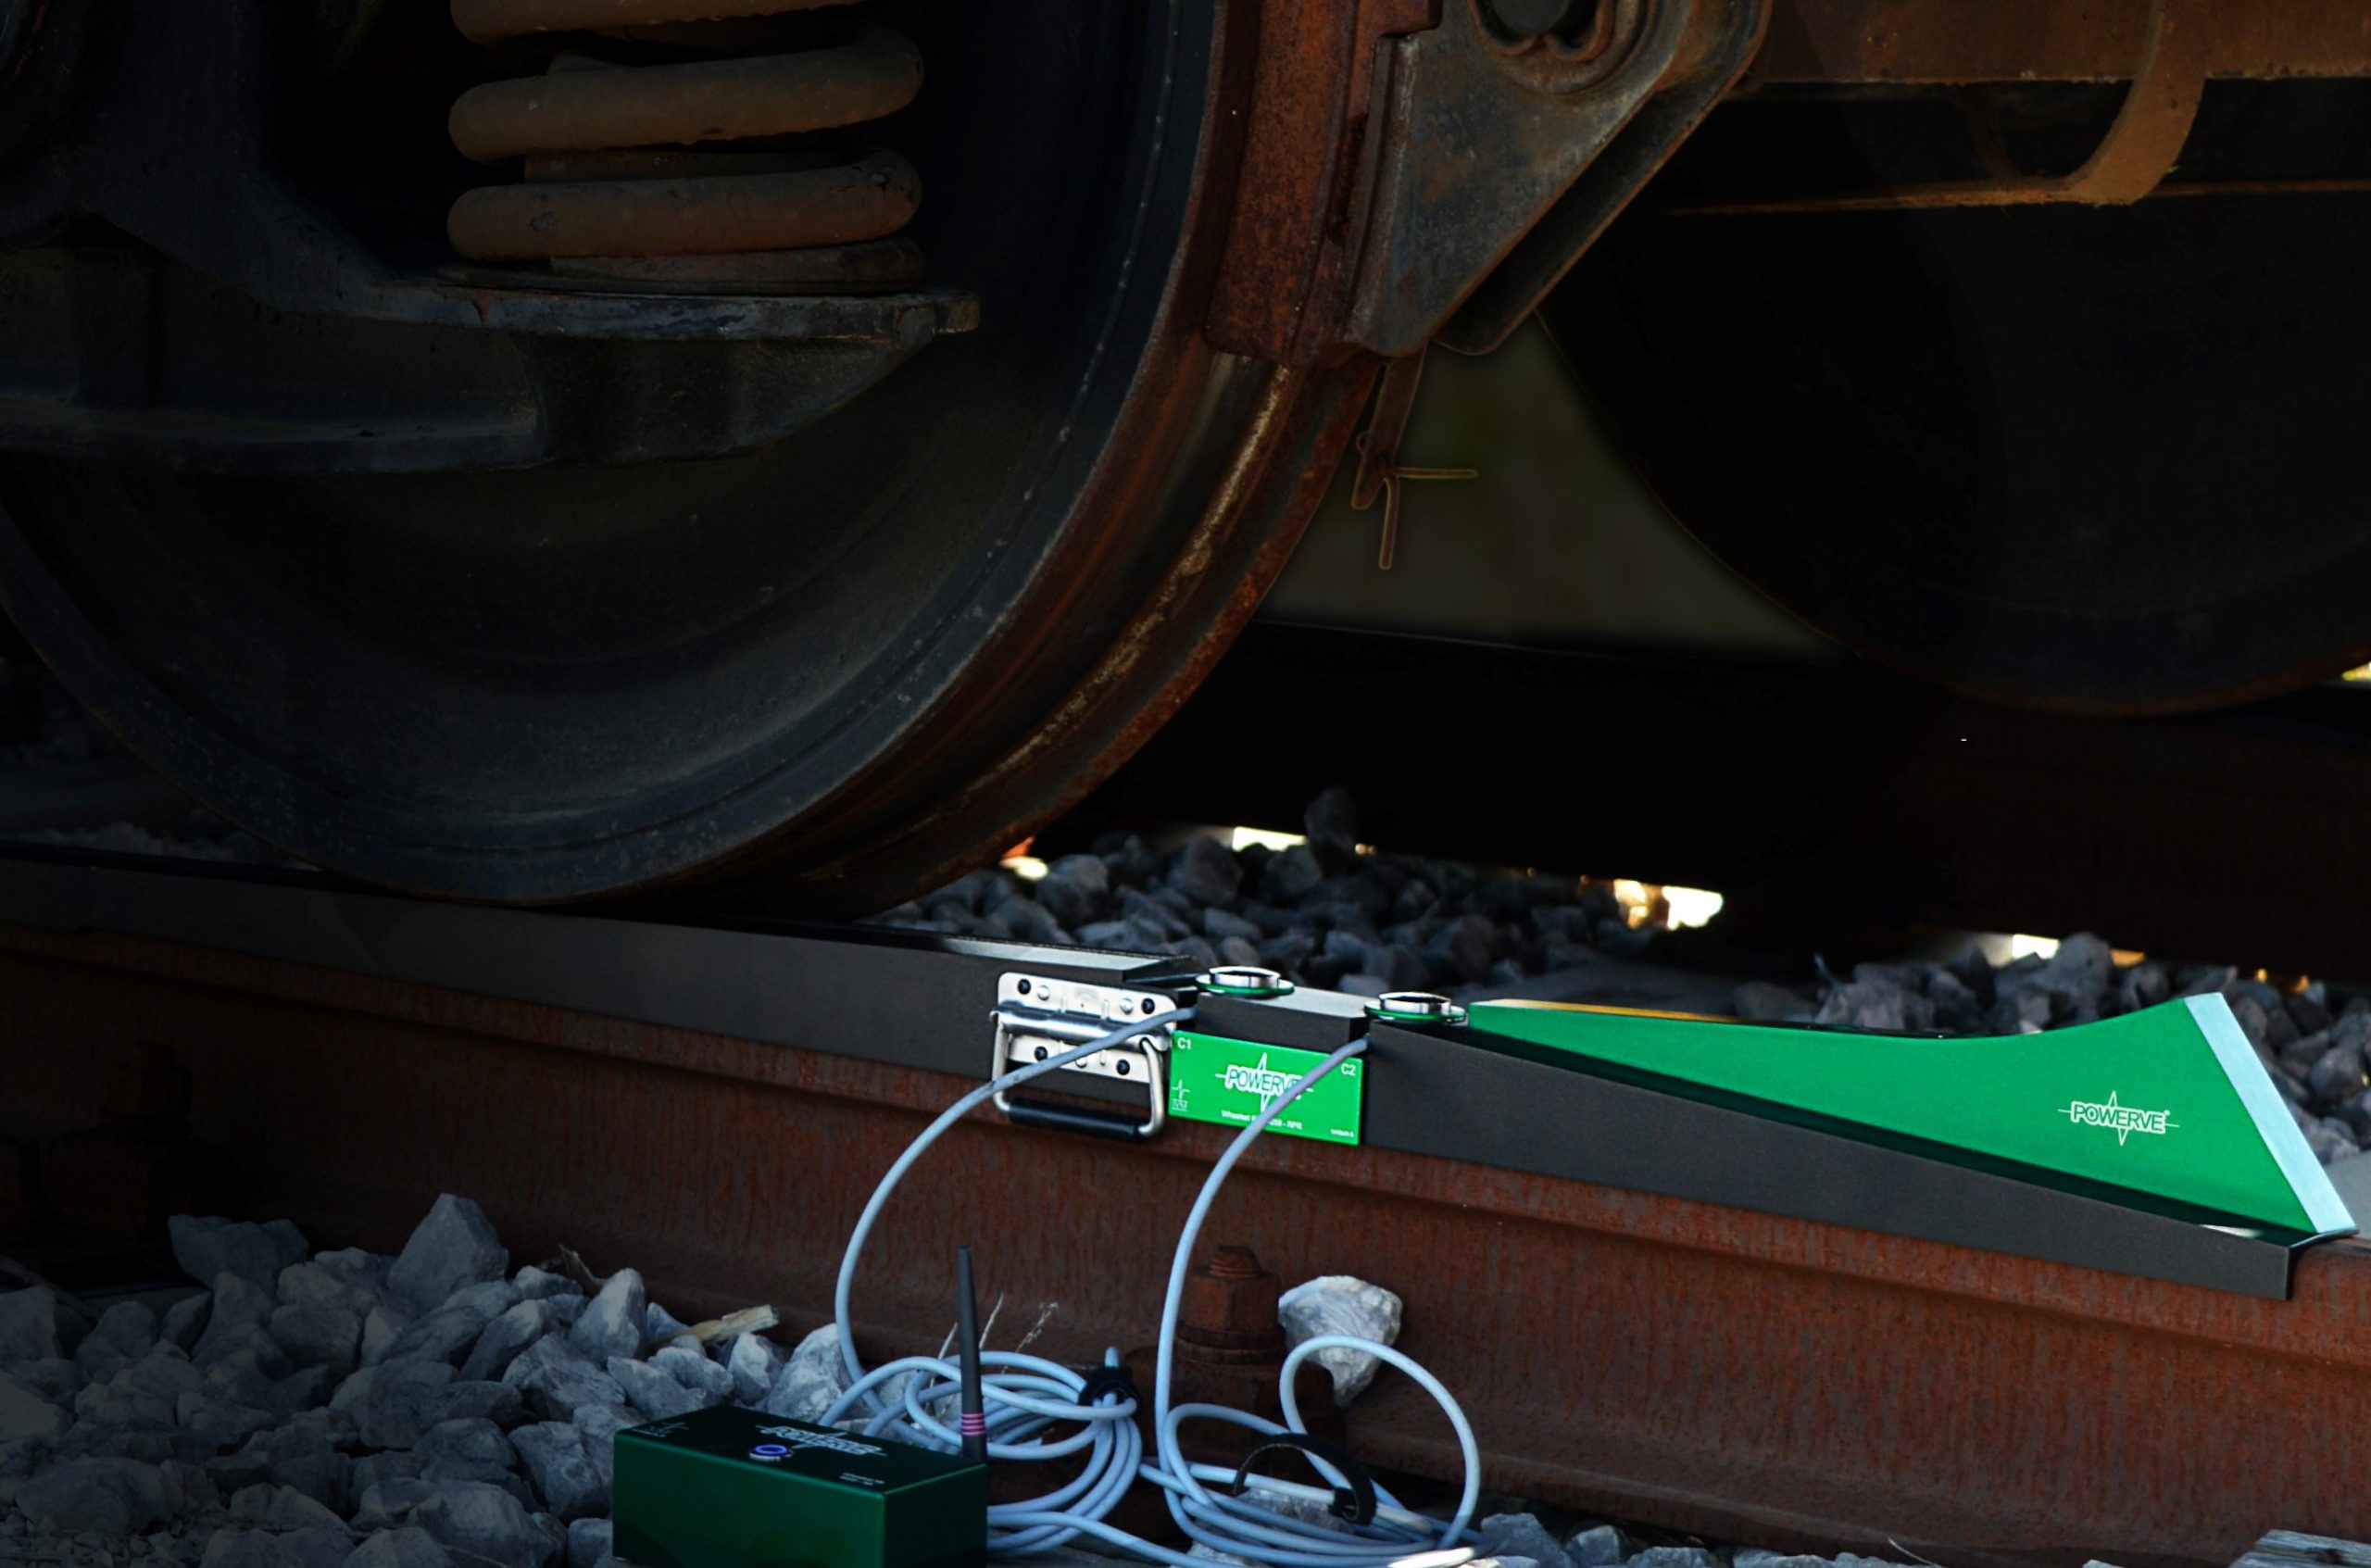 Portable train scale